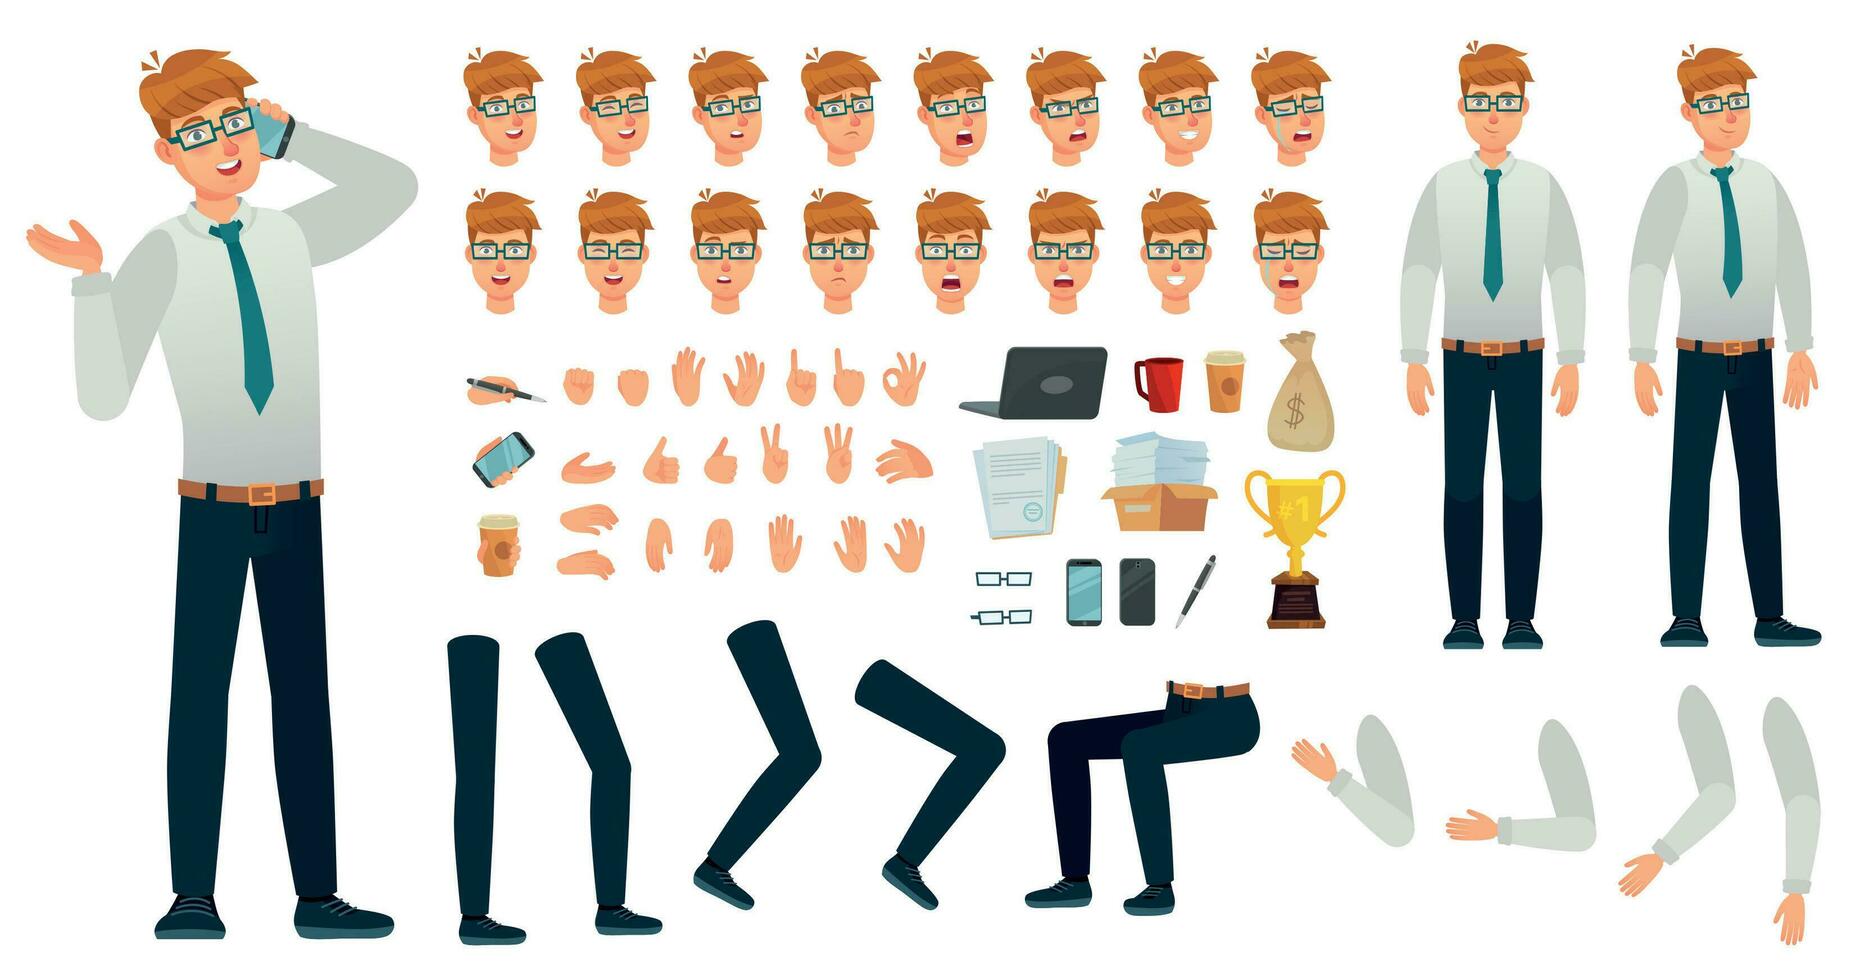 cartone animato manager personaggio kit. ufficio manager creazione costruttore, diverso corpo visualizzazioni, viso emozioni e gesti vettore impostato